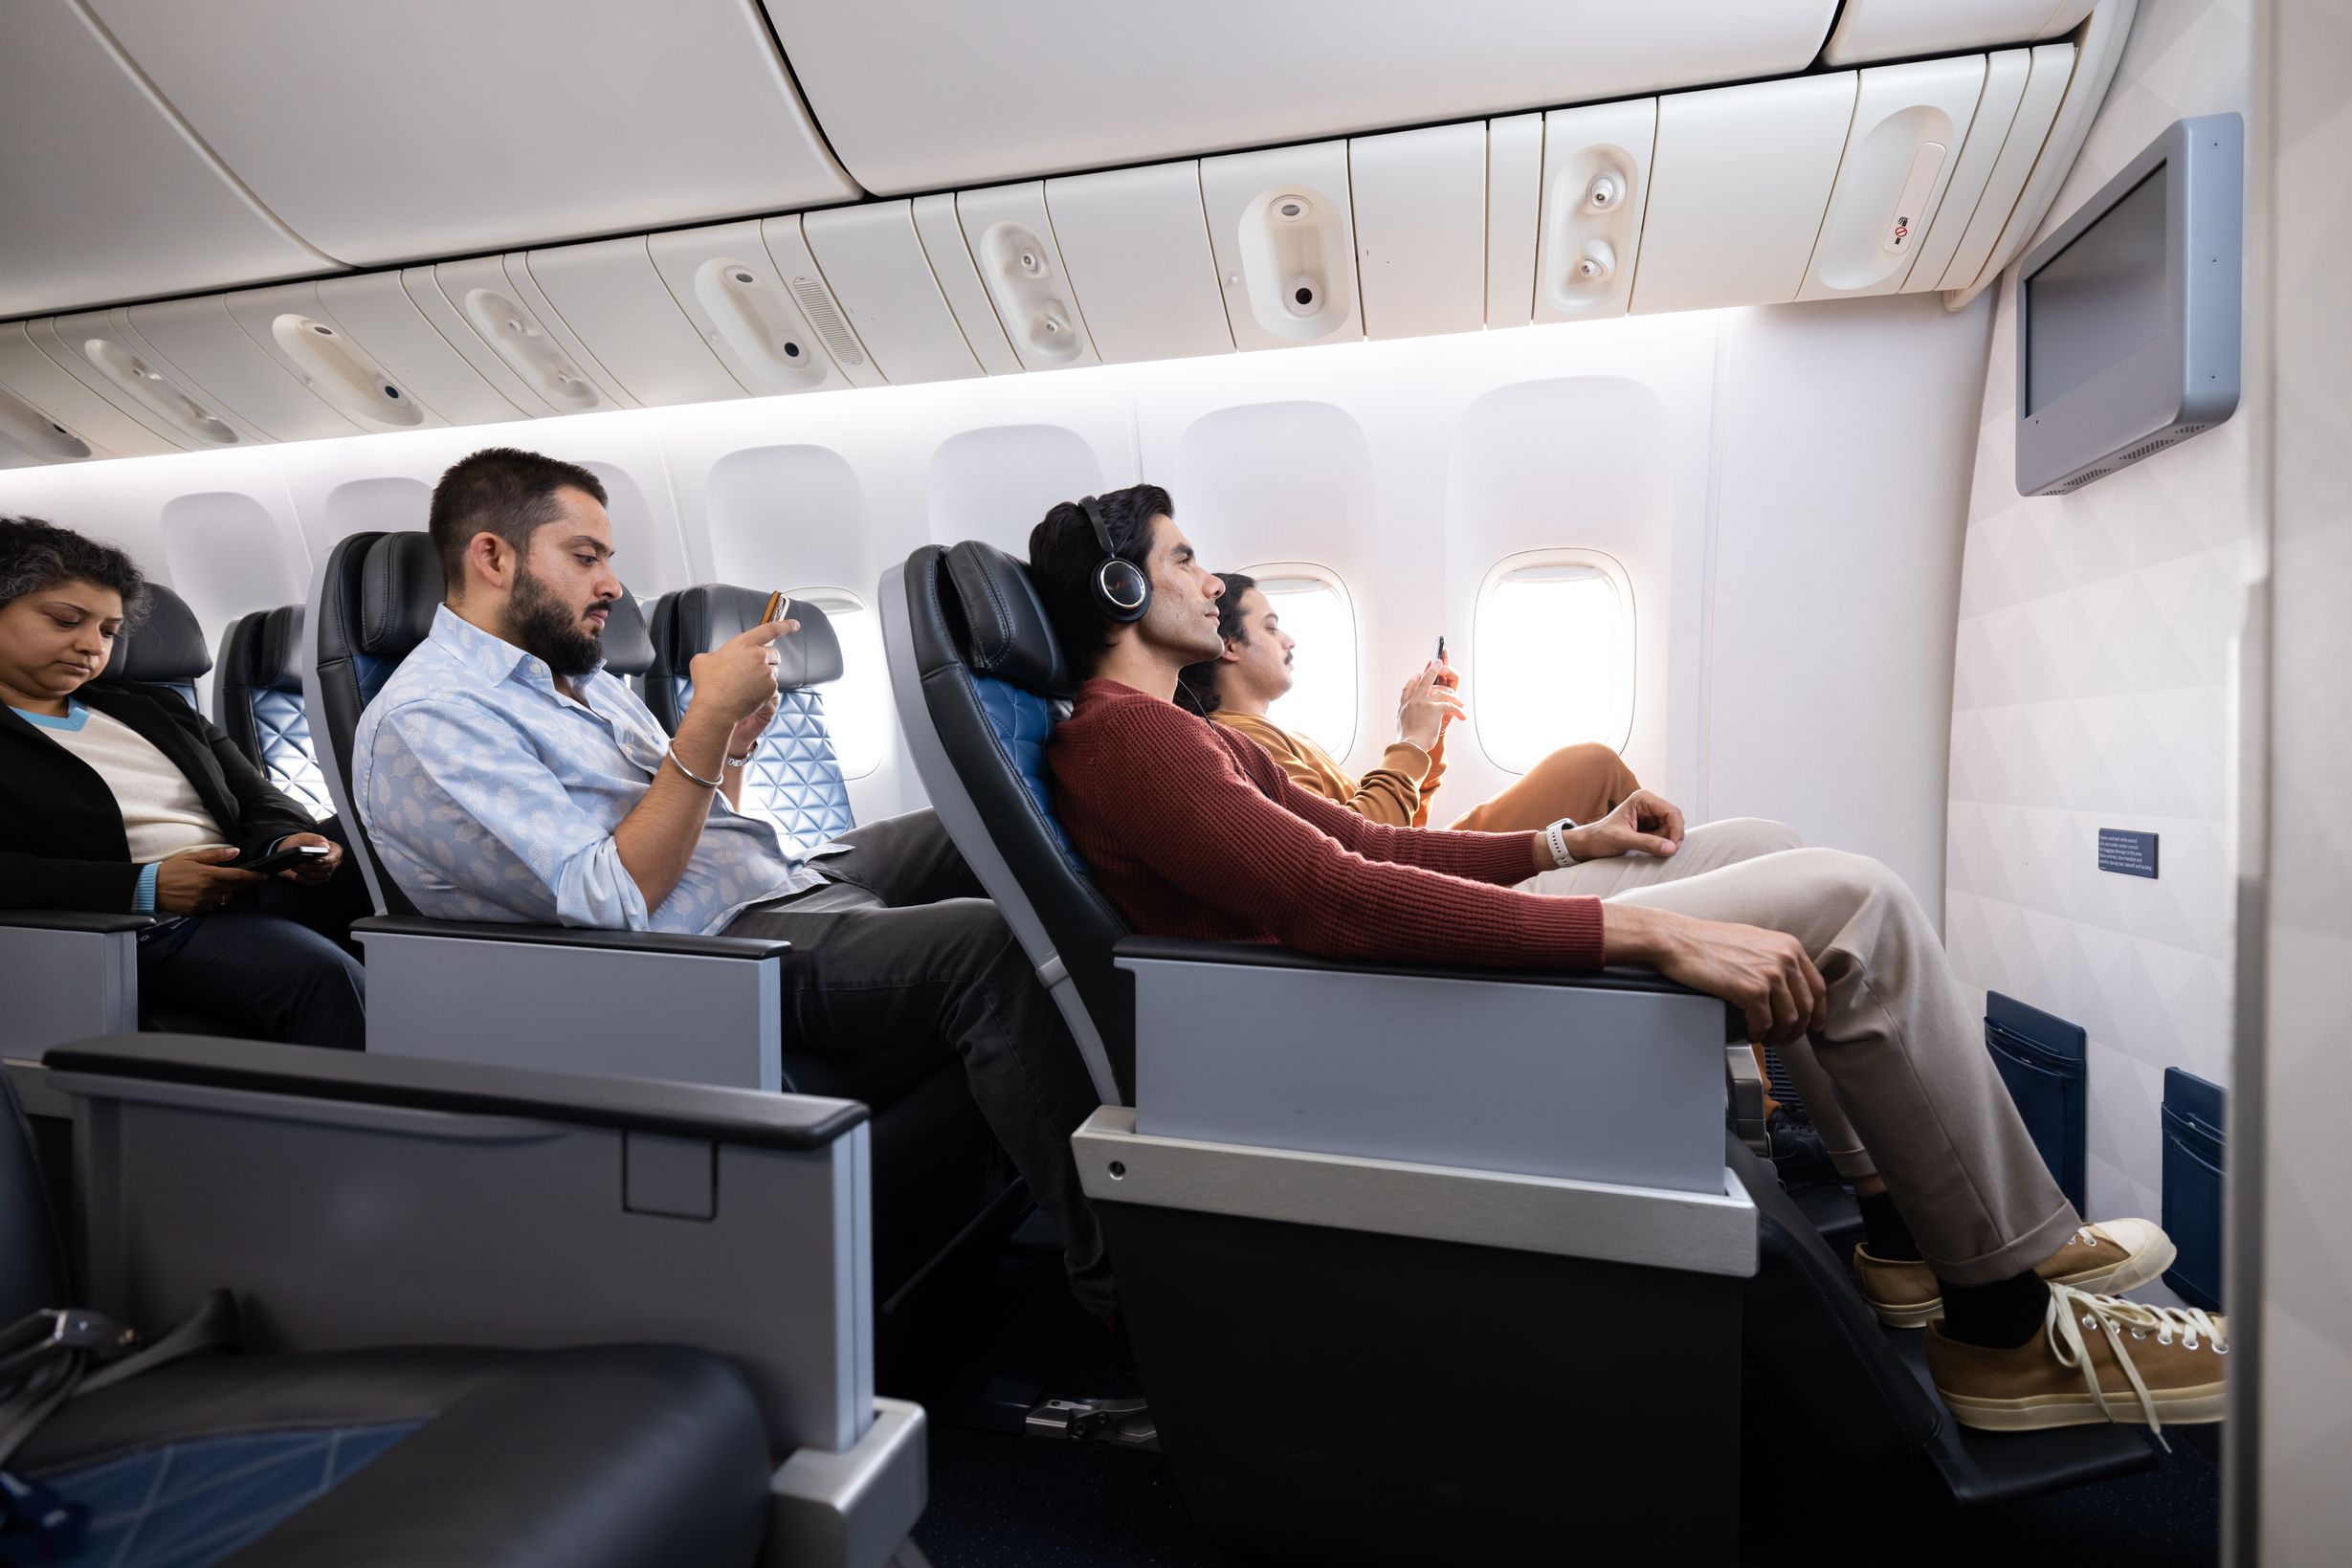 Air India premium economy seats